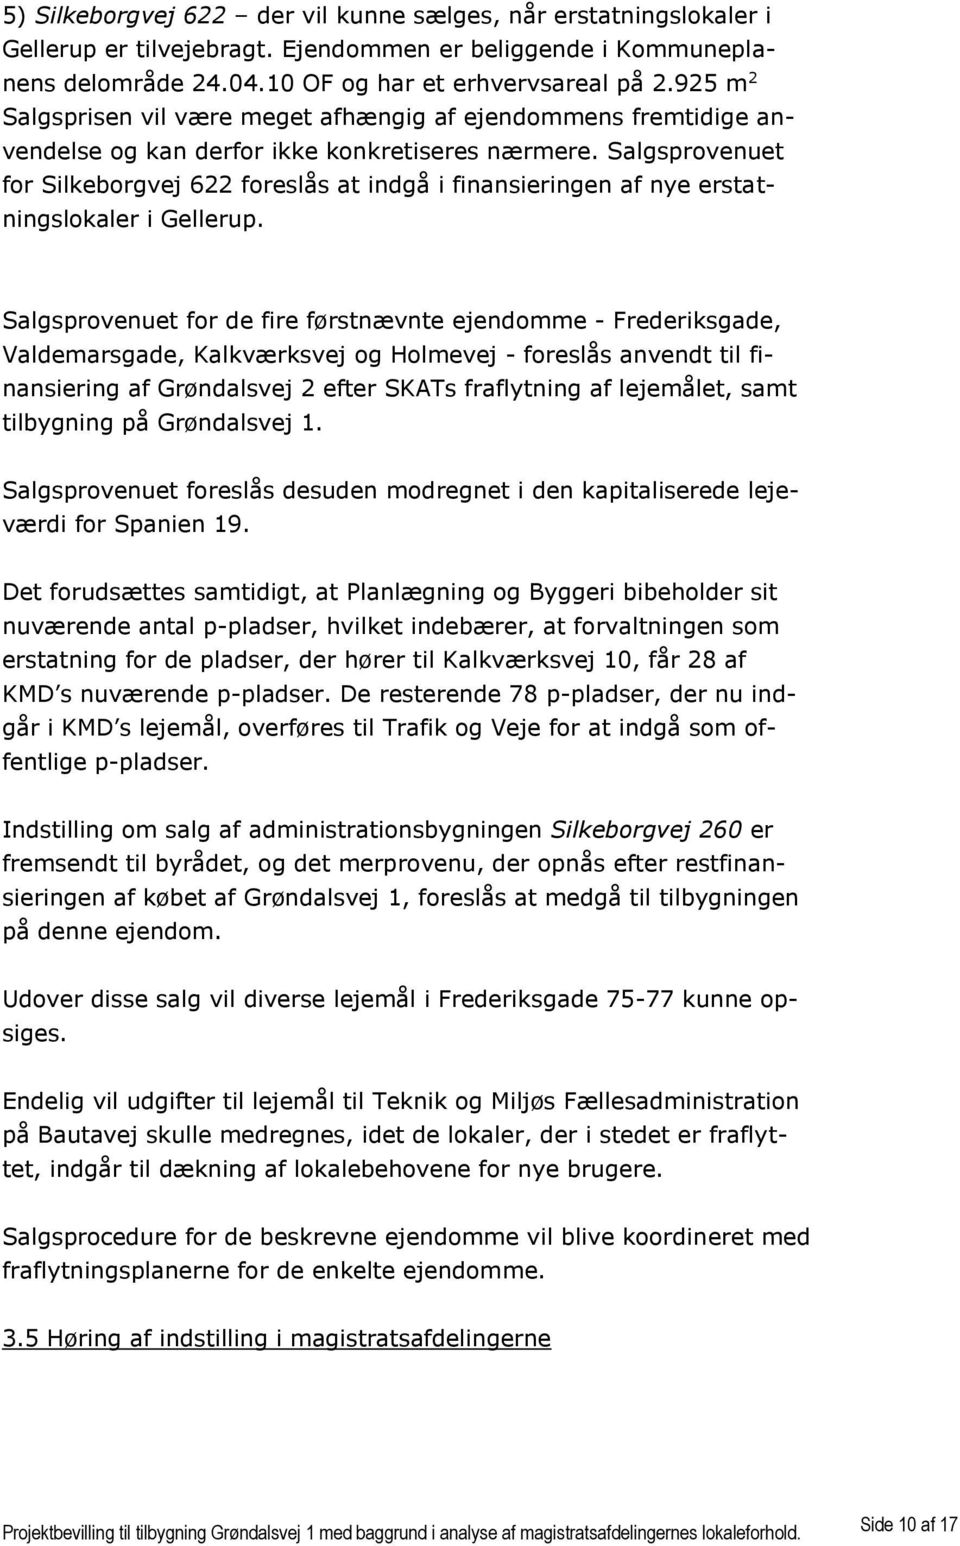 Salgsprovenuet for Silkeborgvej 622 foreslås at indgå i finansieringen af nye erstatningslokaler i Gellerup.